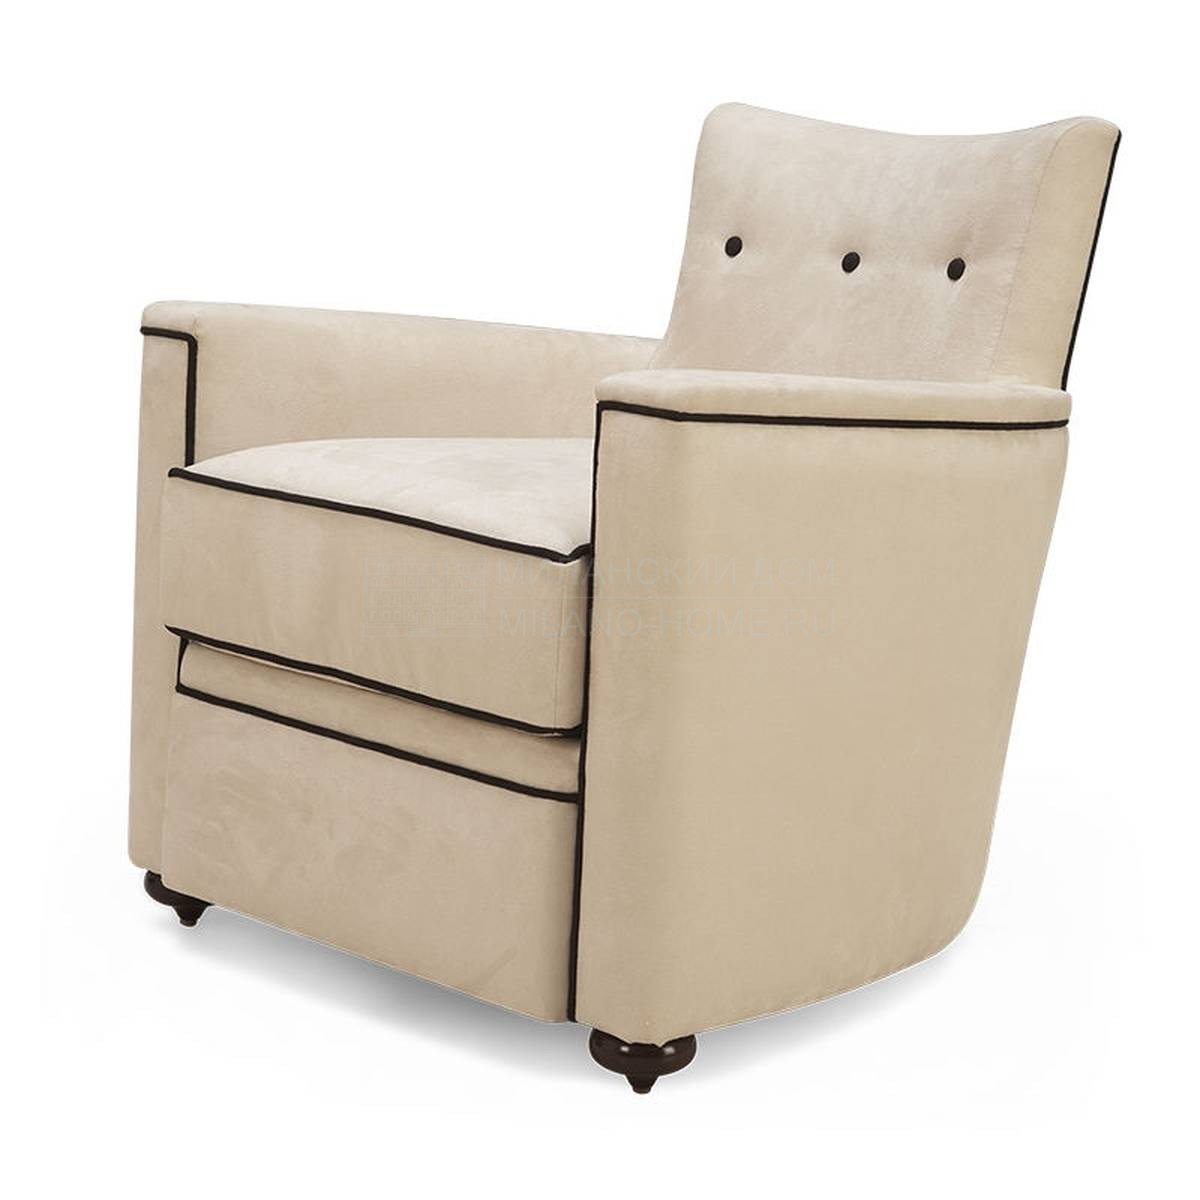 Кресло Montecristo armchair из США фабрики CHRISTOPHER GUY